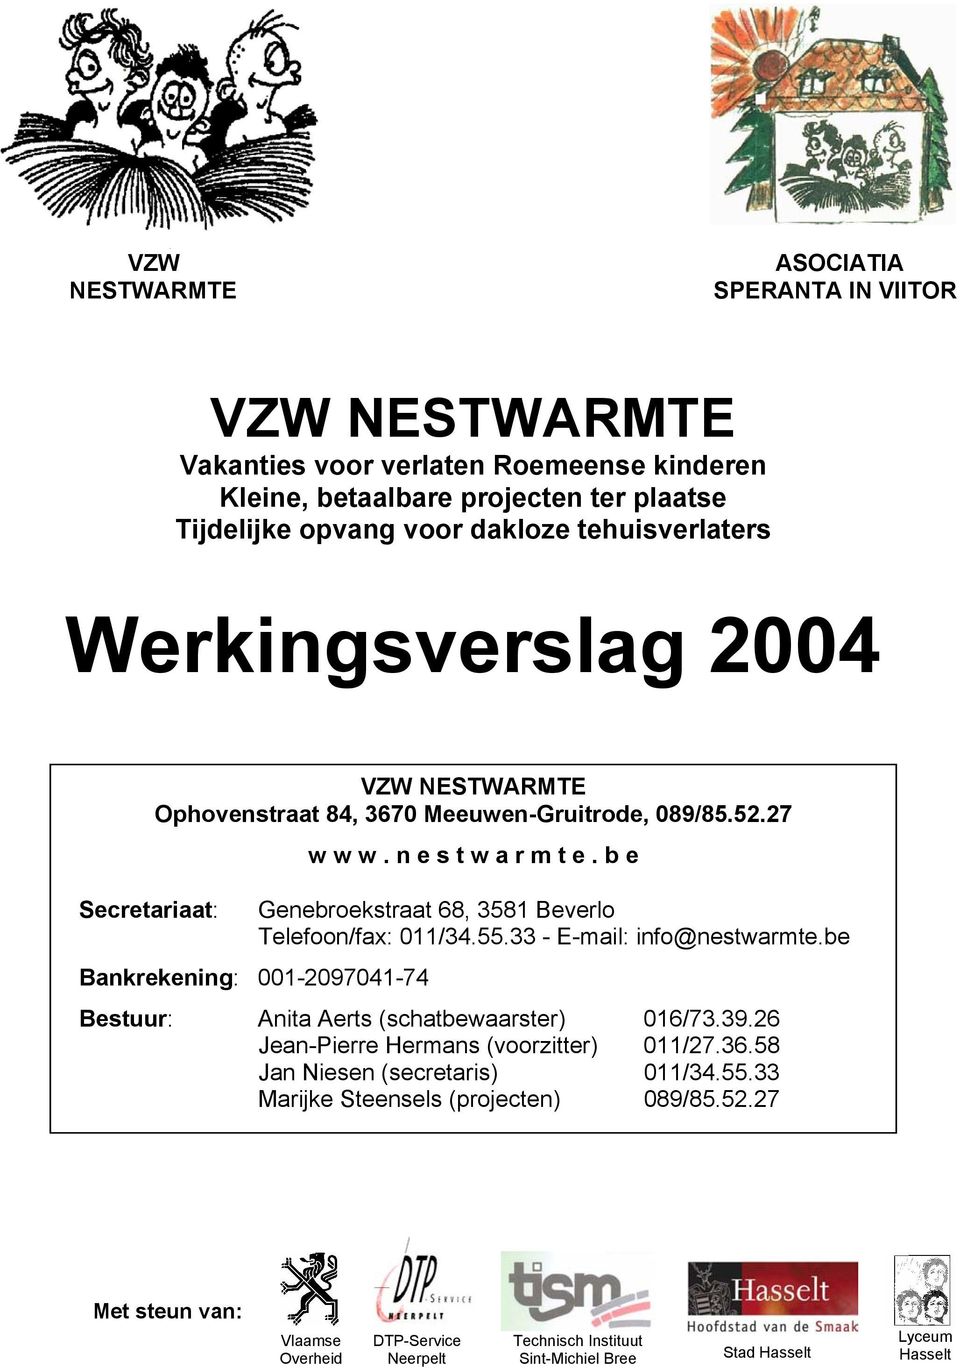 b e Genebroekstraat 68, 3581 Beverlo Telefoon/fax: 011/34.55.33 - E-mail: info@nestwarmte.be Bestuur: Anita Aerts (schatbewaarster) 016/73.39.26 Jean-Pierre Hermans (voorzitter) 011/27.